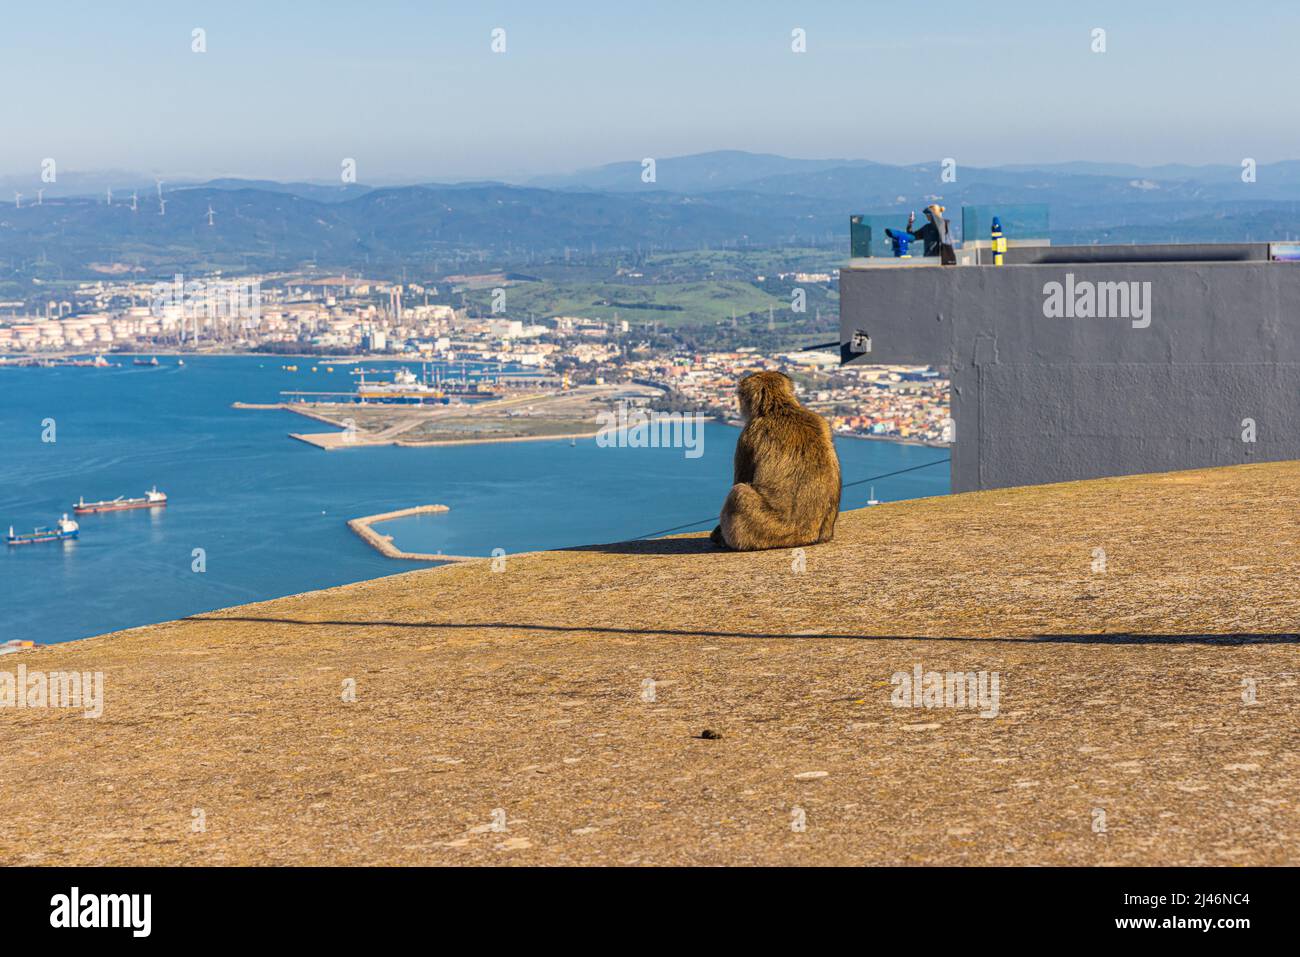 Young Barbery Ape está sentado en la estación superior del teleférico de Gibraltar y tiene vistas a la bahía. Foto de stock